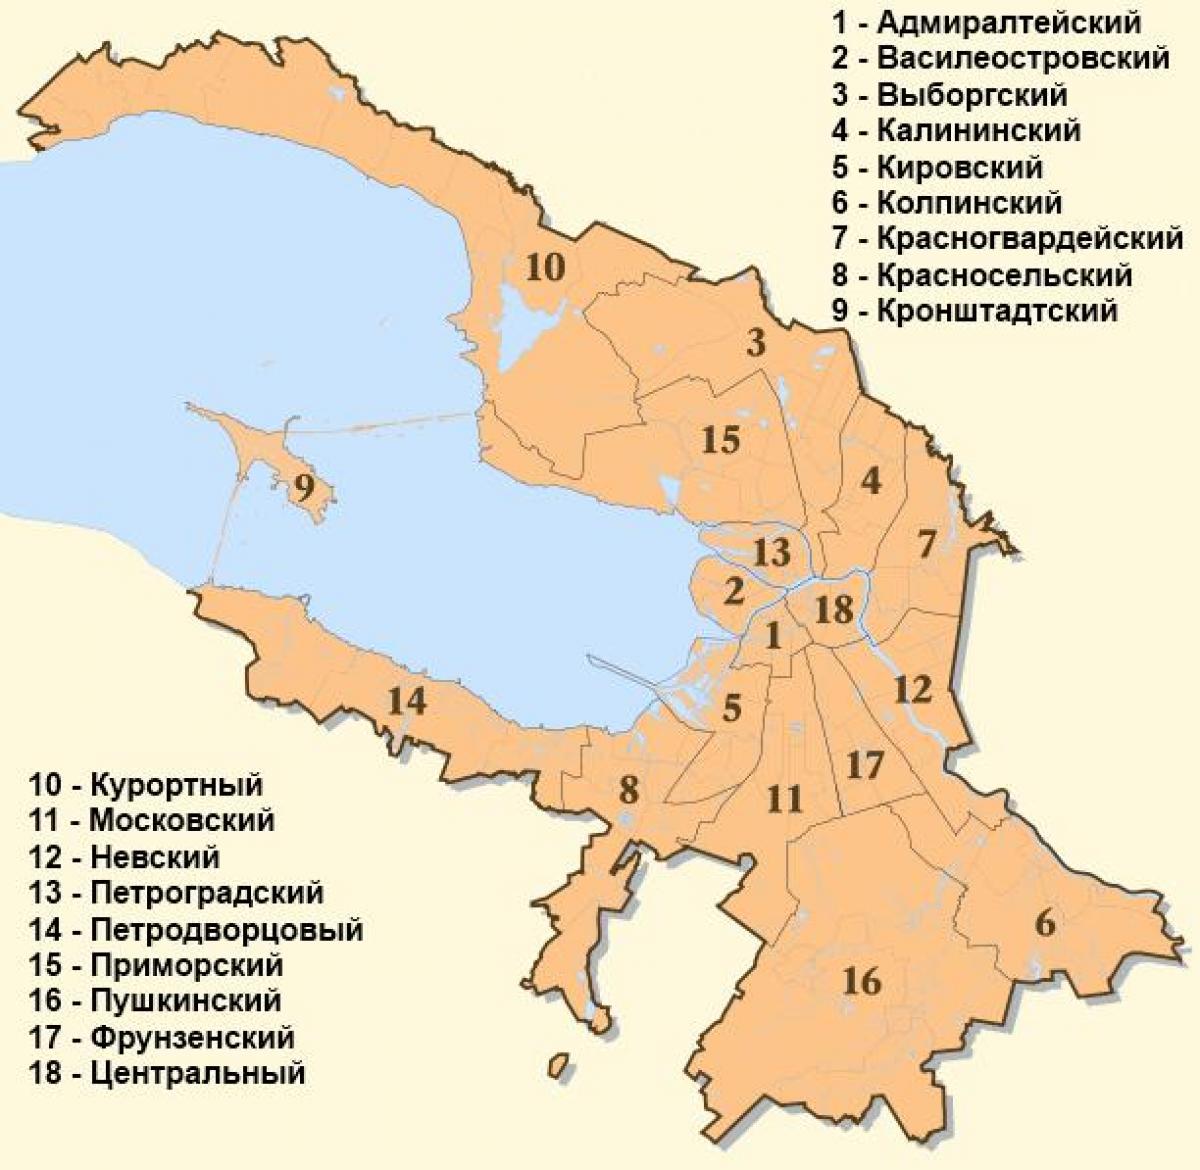 Stadsdeelkaart van Sint-Petersburg